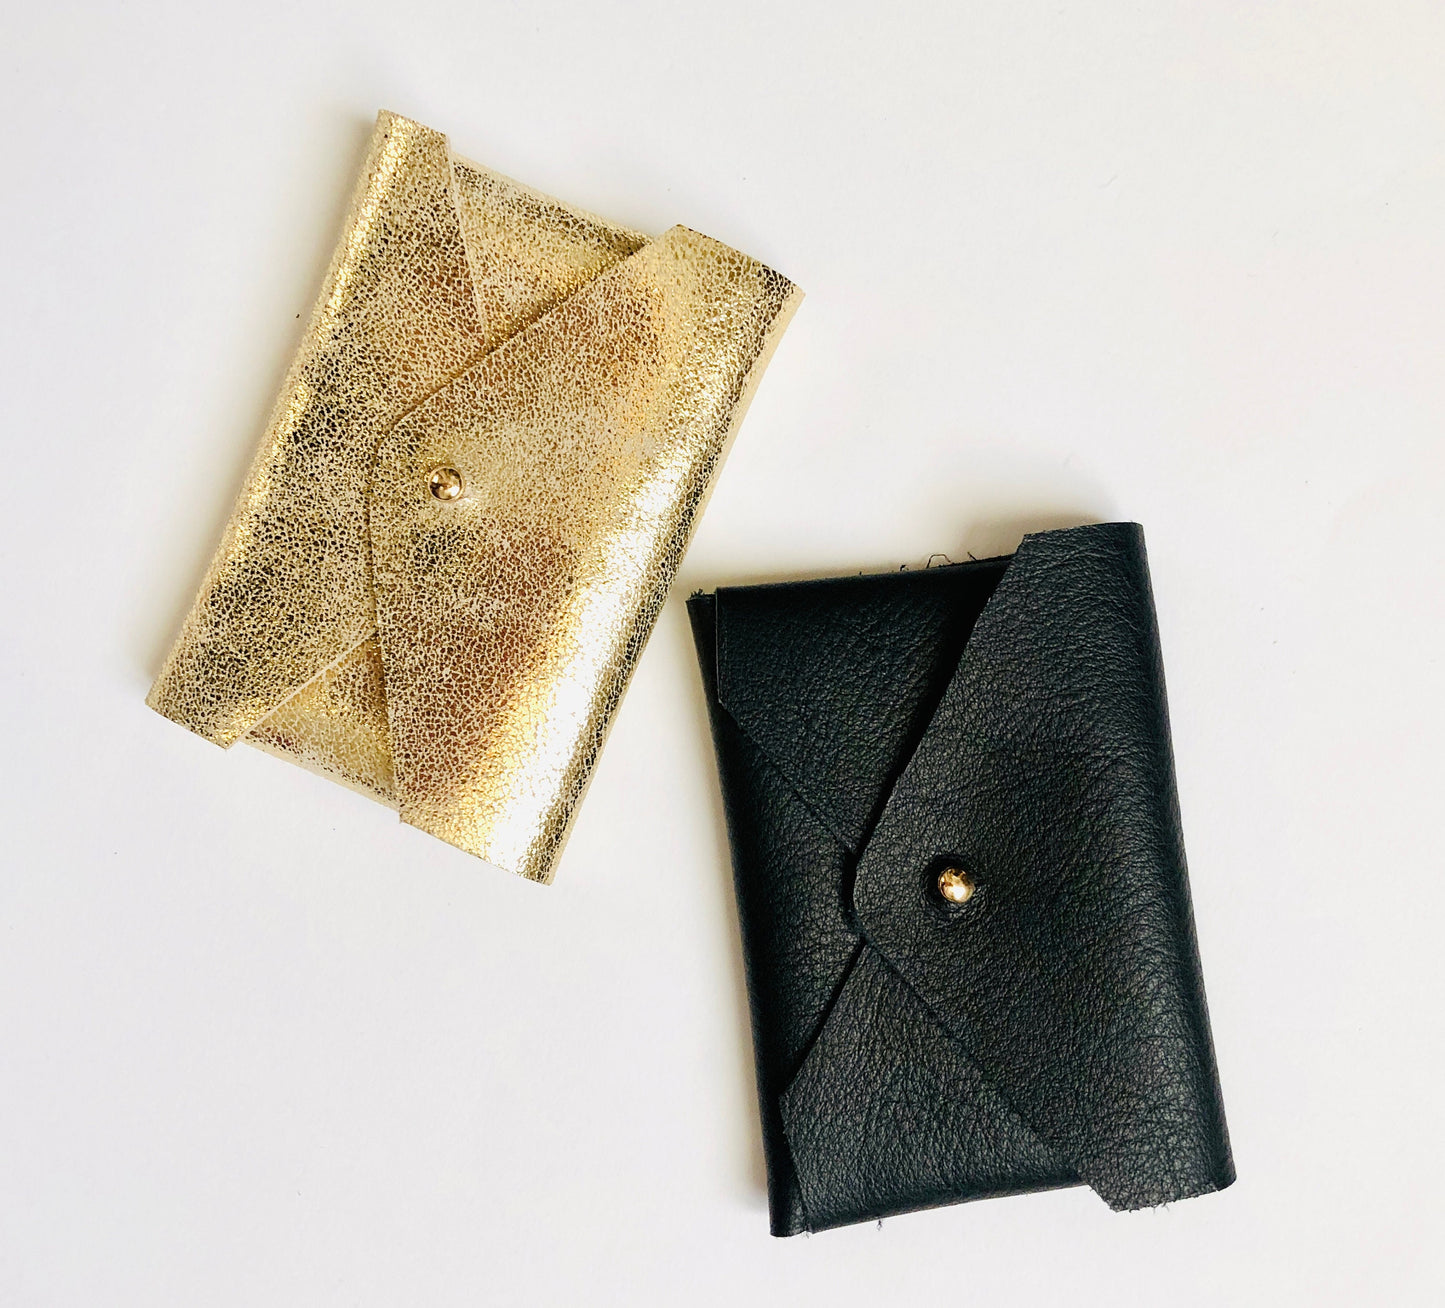 Porte monnaie cuir doré - porte monnaie personnalisé - porte carte cuir - porte pièce cuir - bourse cuir noir